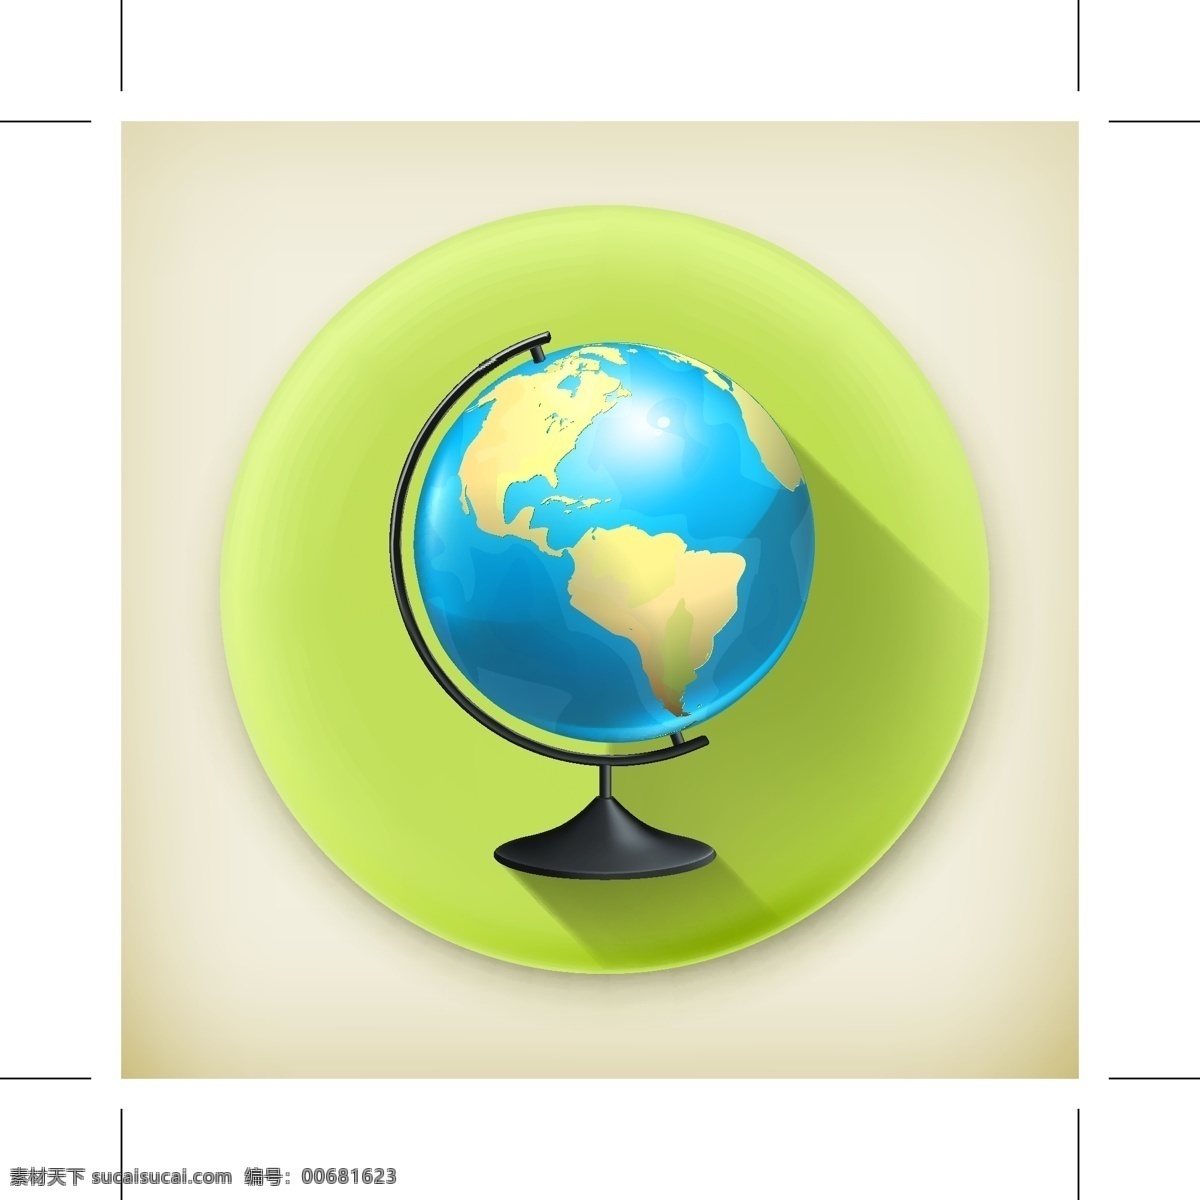 planet earth 矢量地球 卡通地球 地球插图 创意地球 绿色 背景 地球仪 绿色背景 地球 生活百科 矢量素材 白色